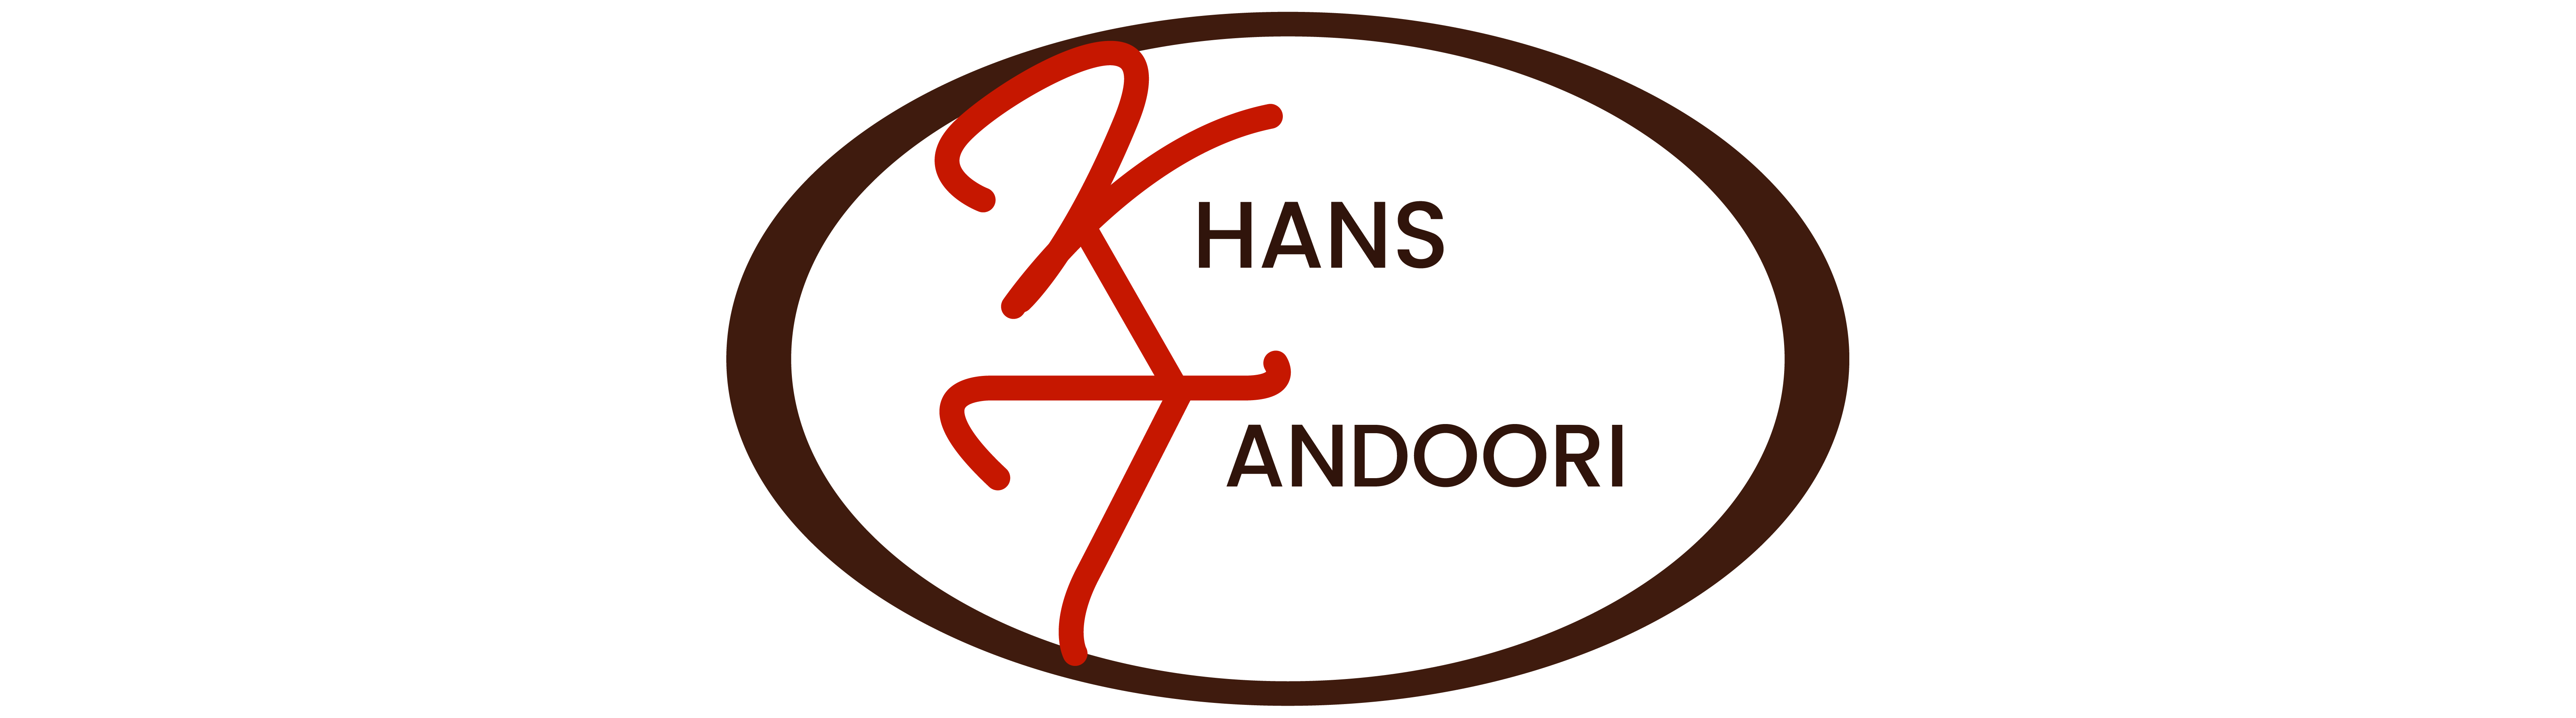 khan Tandoori_logo_alter